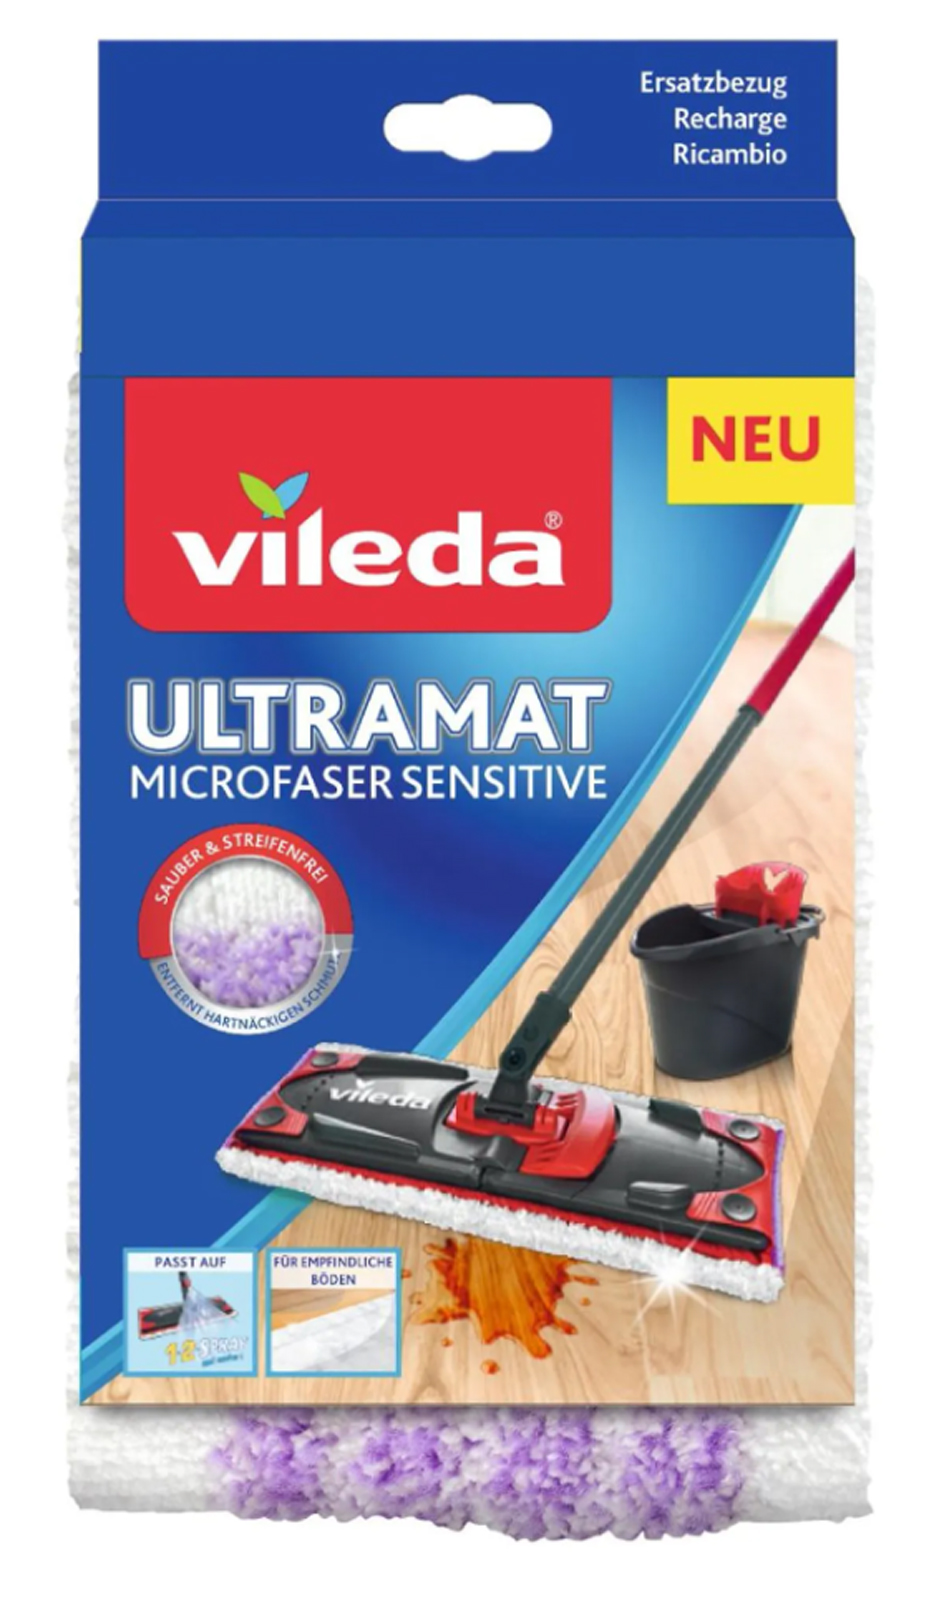 Videla UltraMat Microfaser Sensitive Ersatzbezug - Standard oder XL - Wischbezug für empfindliche Böden